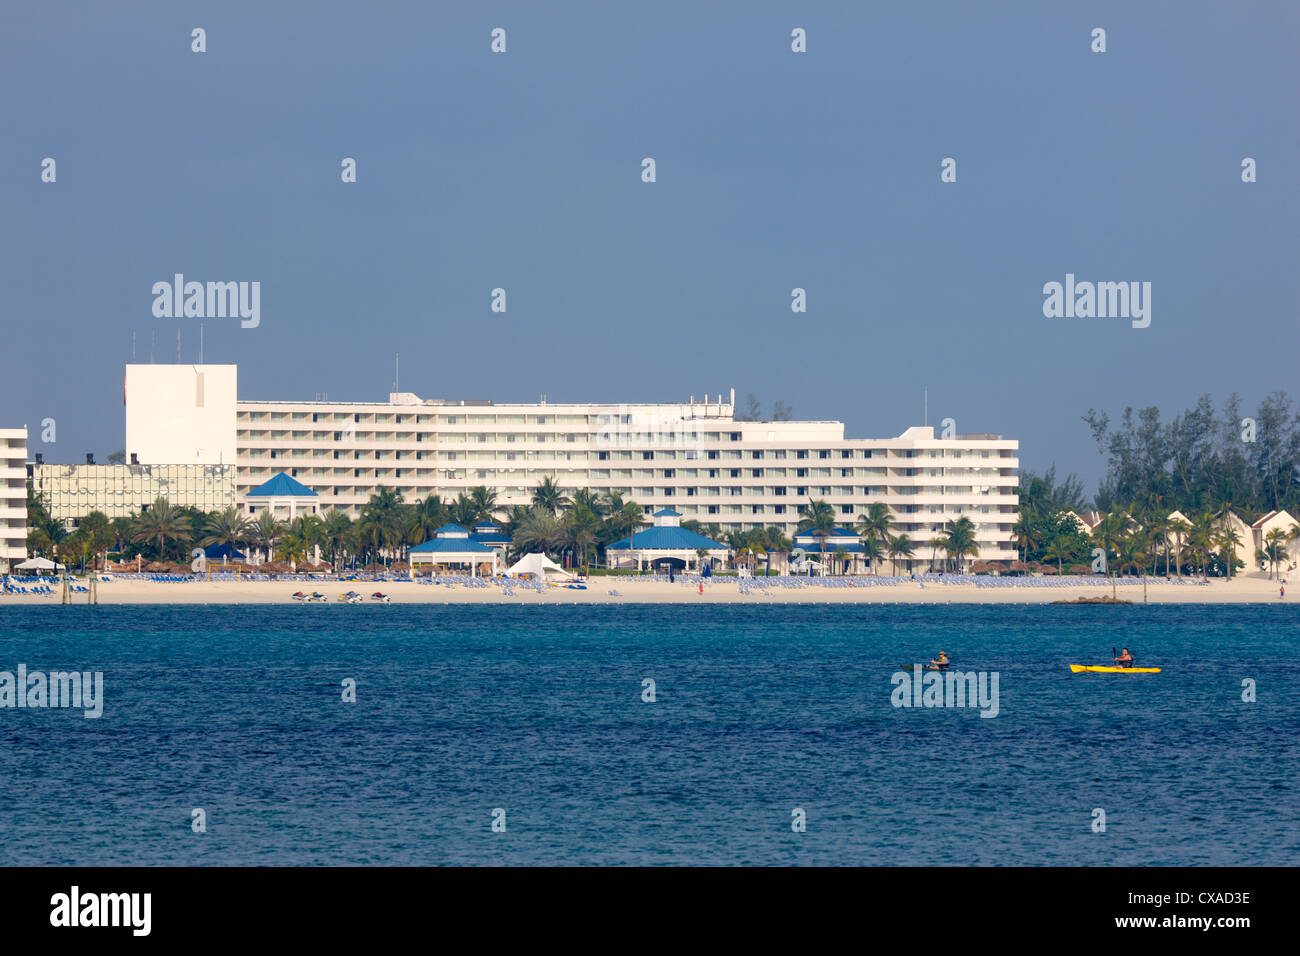 Sheraton Hotel, Nassau, New Providence Island, the Bahamas, Caribbean Stock Photo